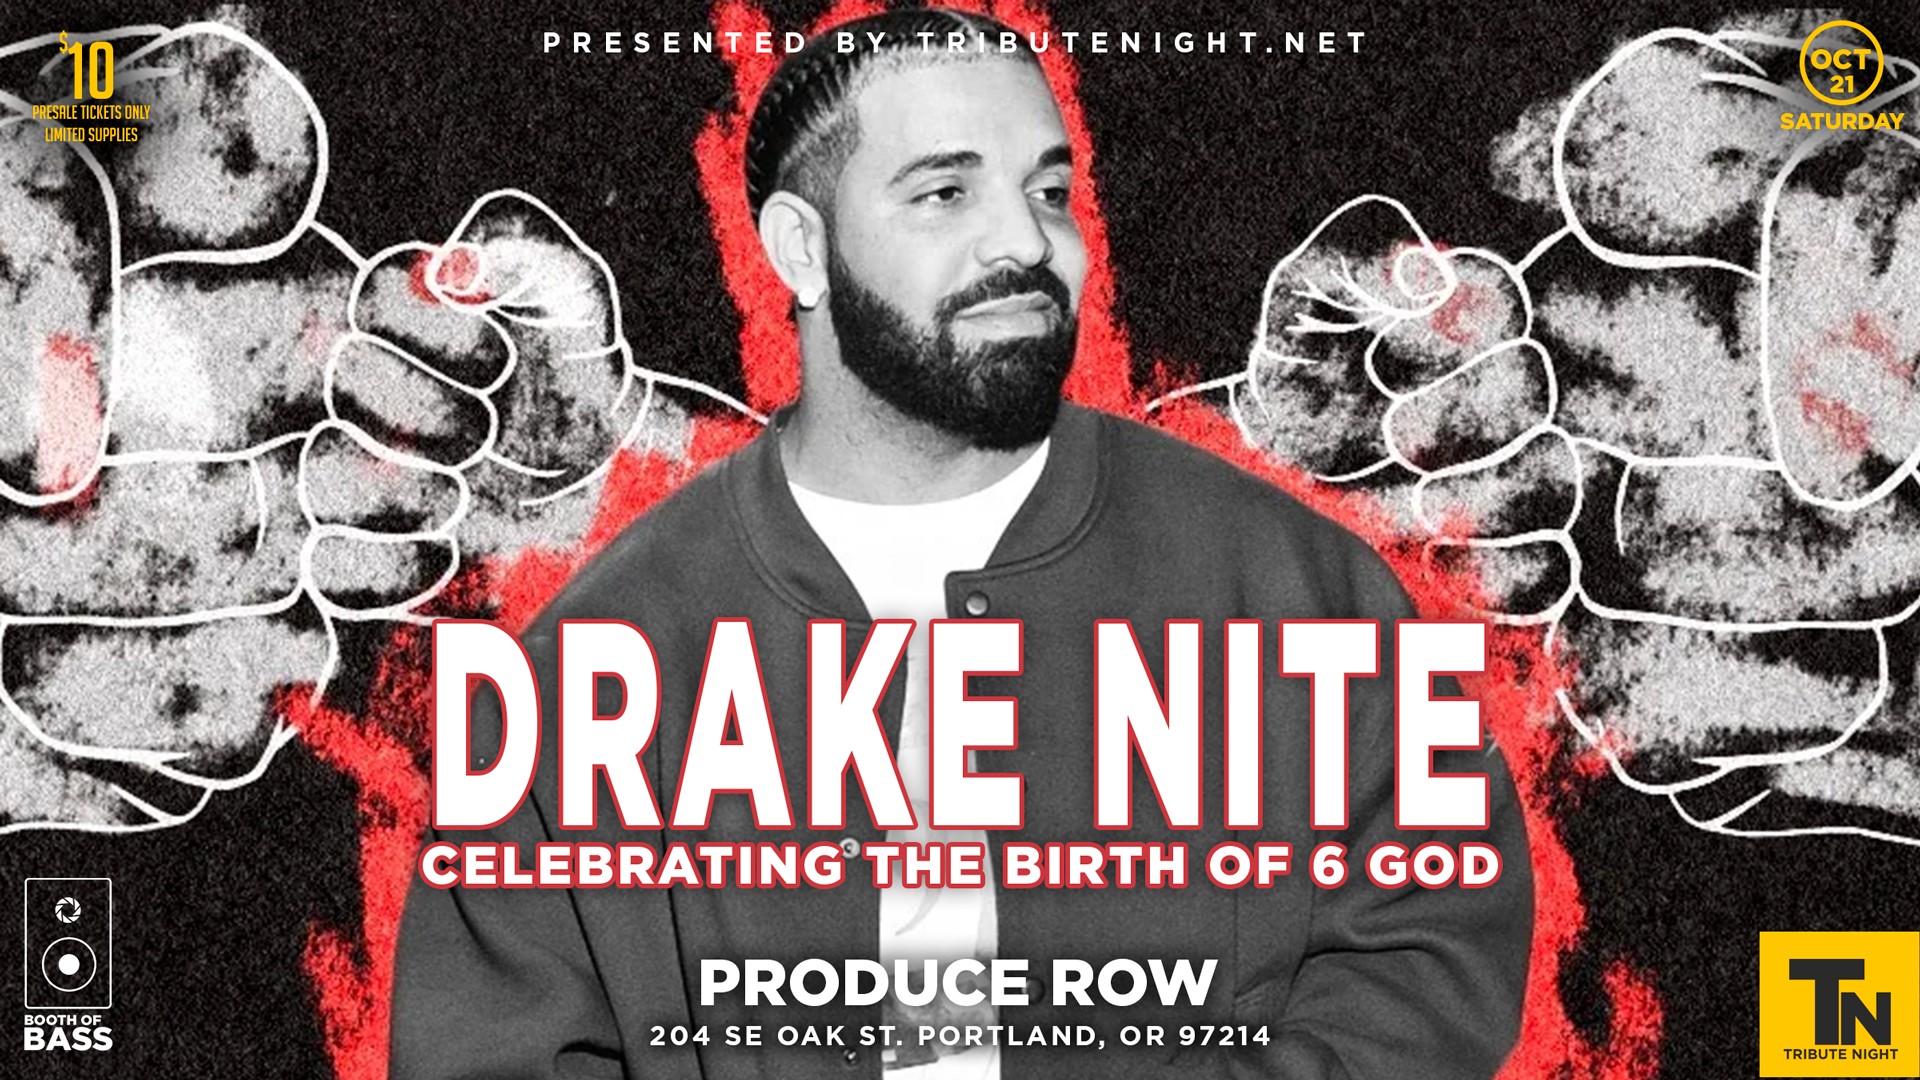 Pigskin Papi: Drake Songs To Be Played During 'Monday Night